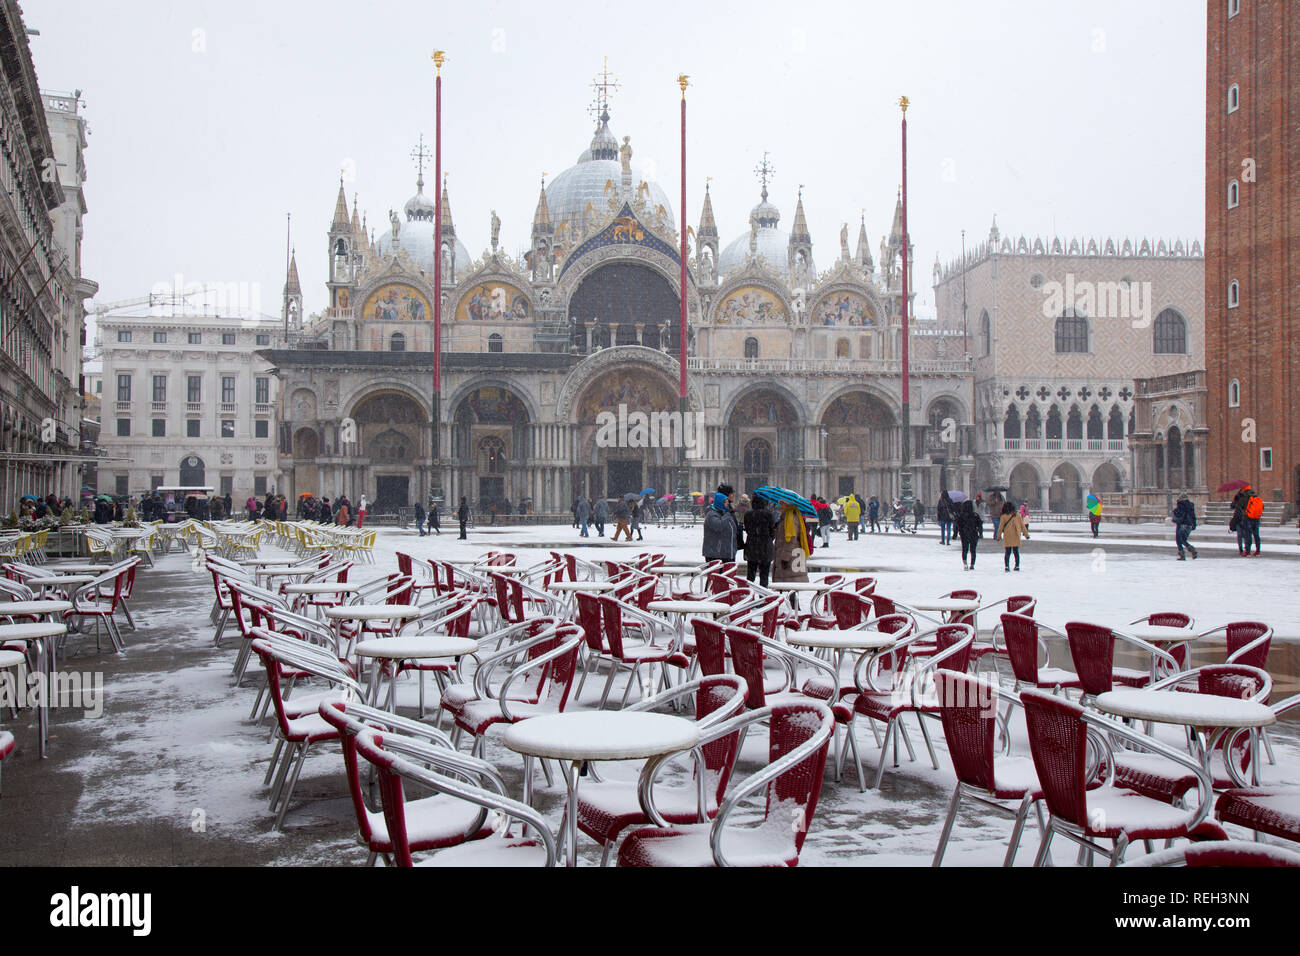 Il neige à Venise, palais des Doges sur la place Saint-Marc, Venise, Italie Banque D'Images